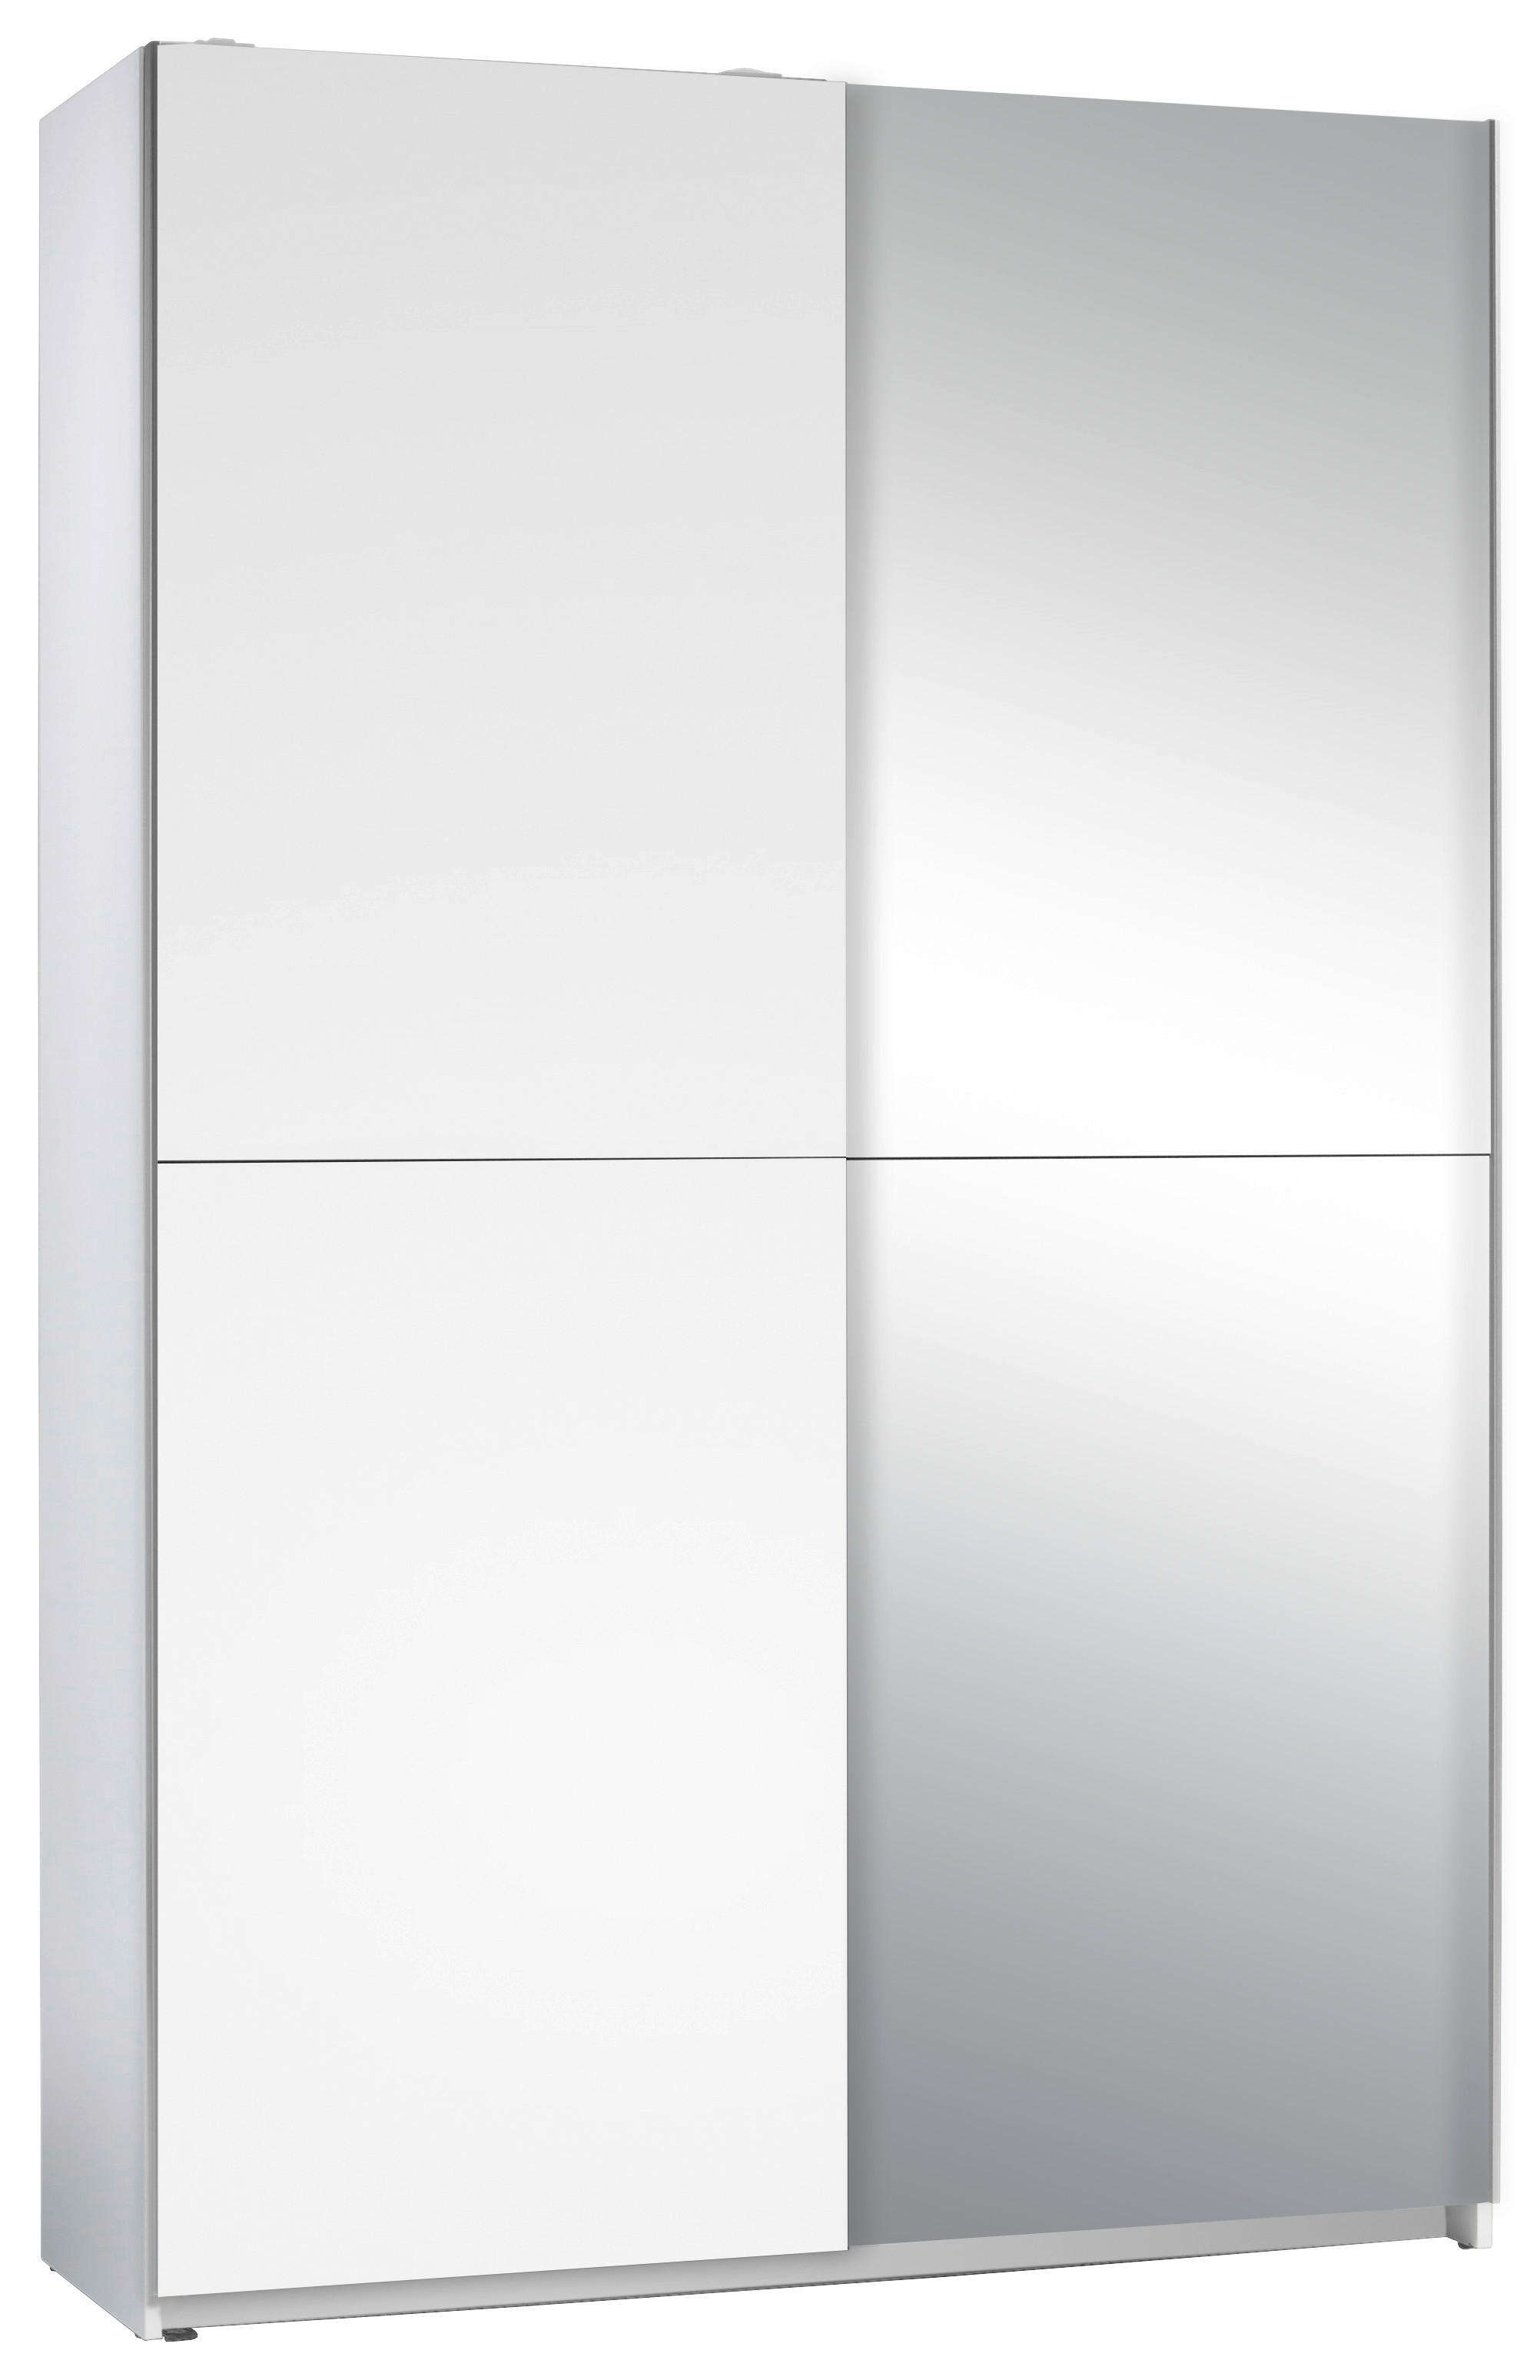 SCHWEBETÜRENSCHRANK 2-türig Weiß  - Silberfarben/Weiß, Basics, Glas (125/195,5/38cm) - P & B